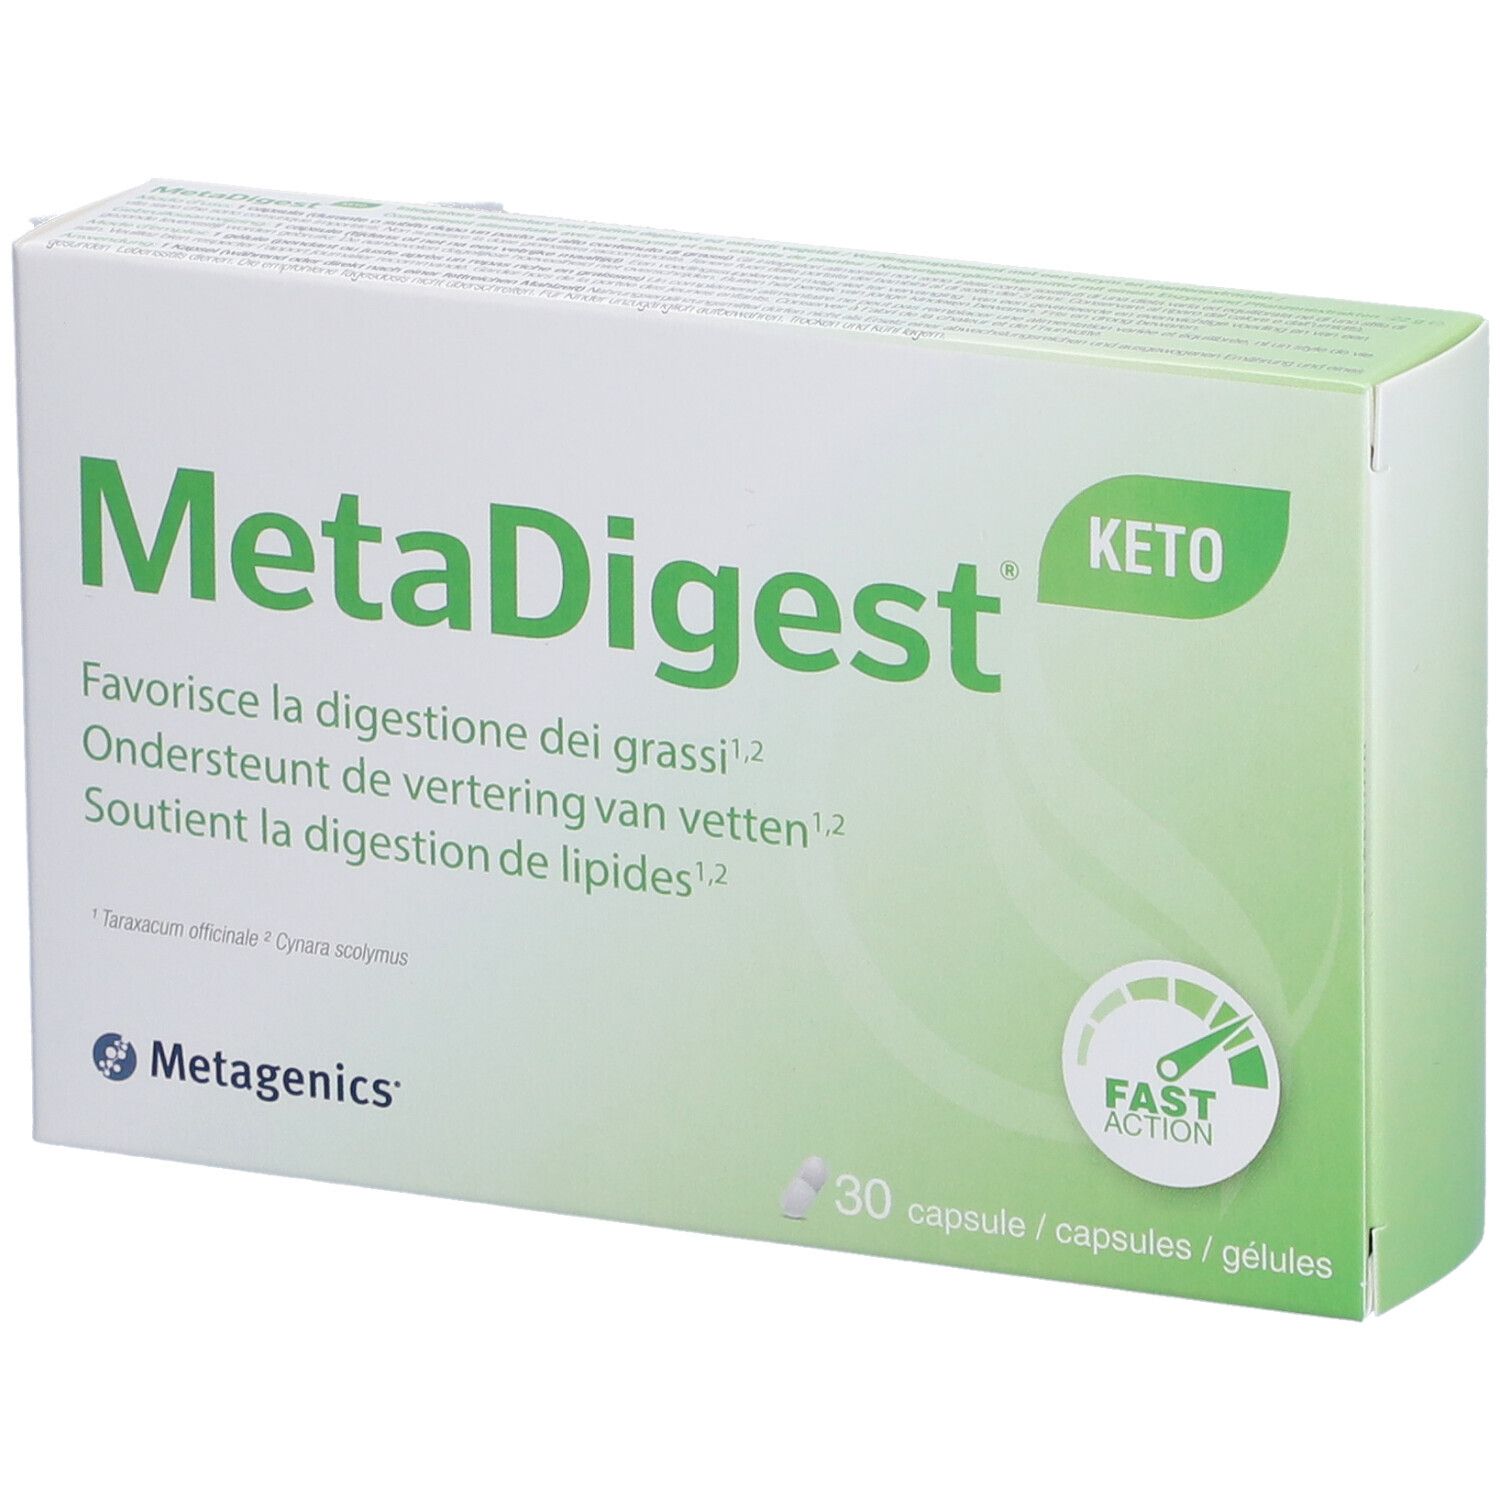 MetaDigest® Keto